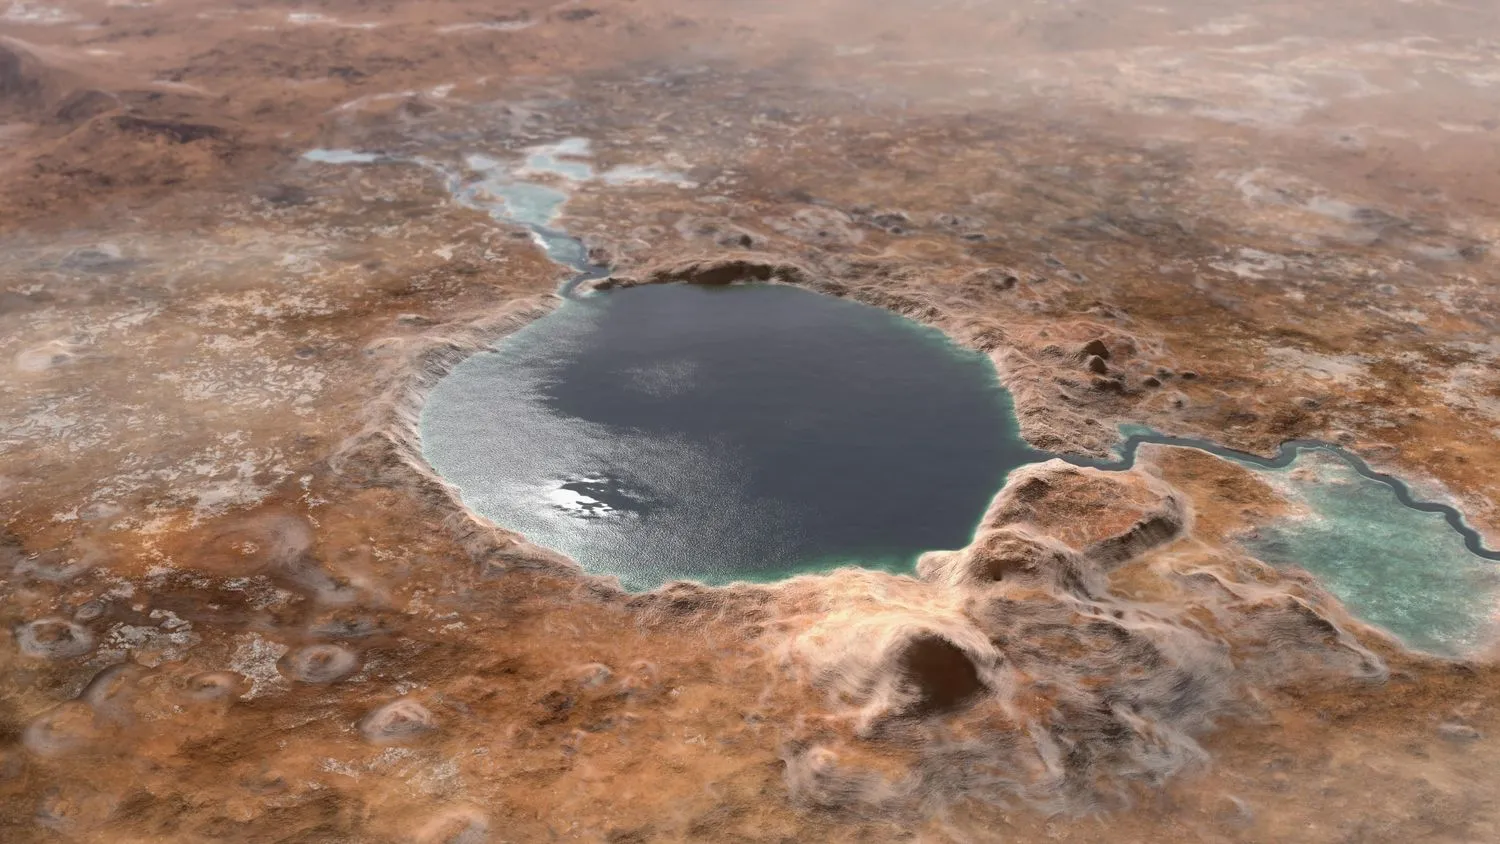 Mehr über den Artikel erfahren Der NASA-Rover Perseverance bestätigt die Existenz eines alten Sees auf dem Mars, der Hinweise auf früheres Leben enthalten könnte